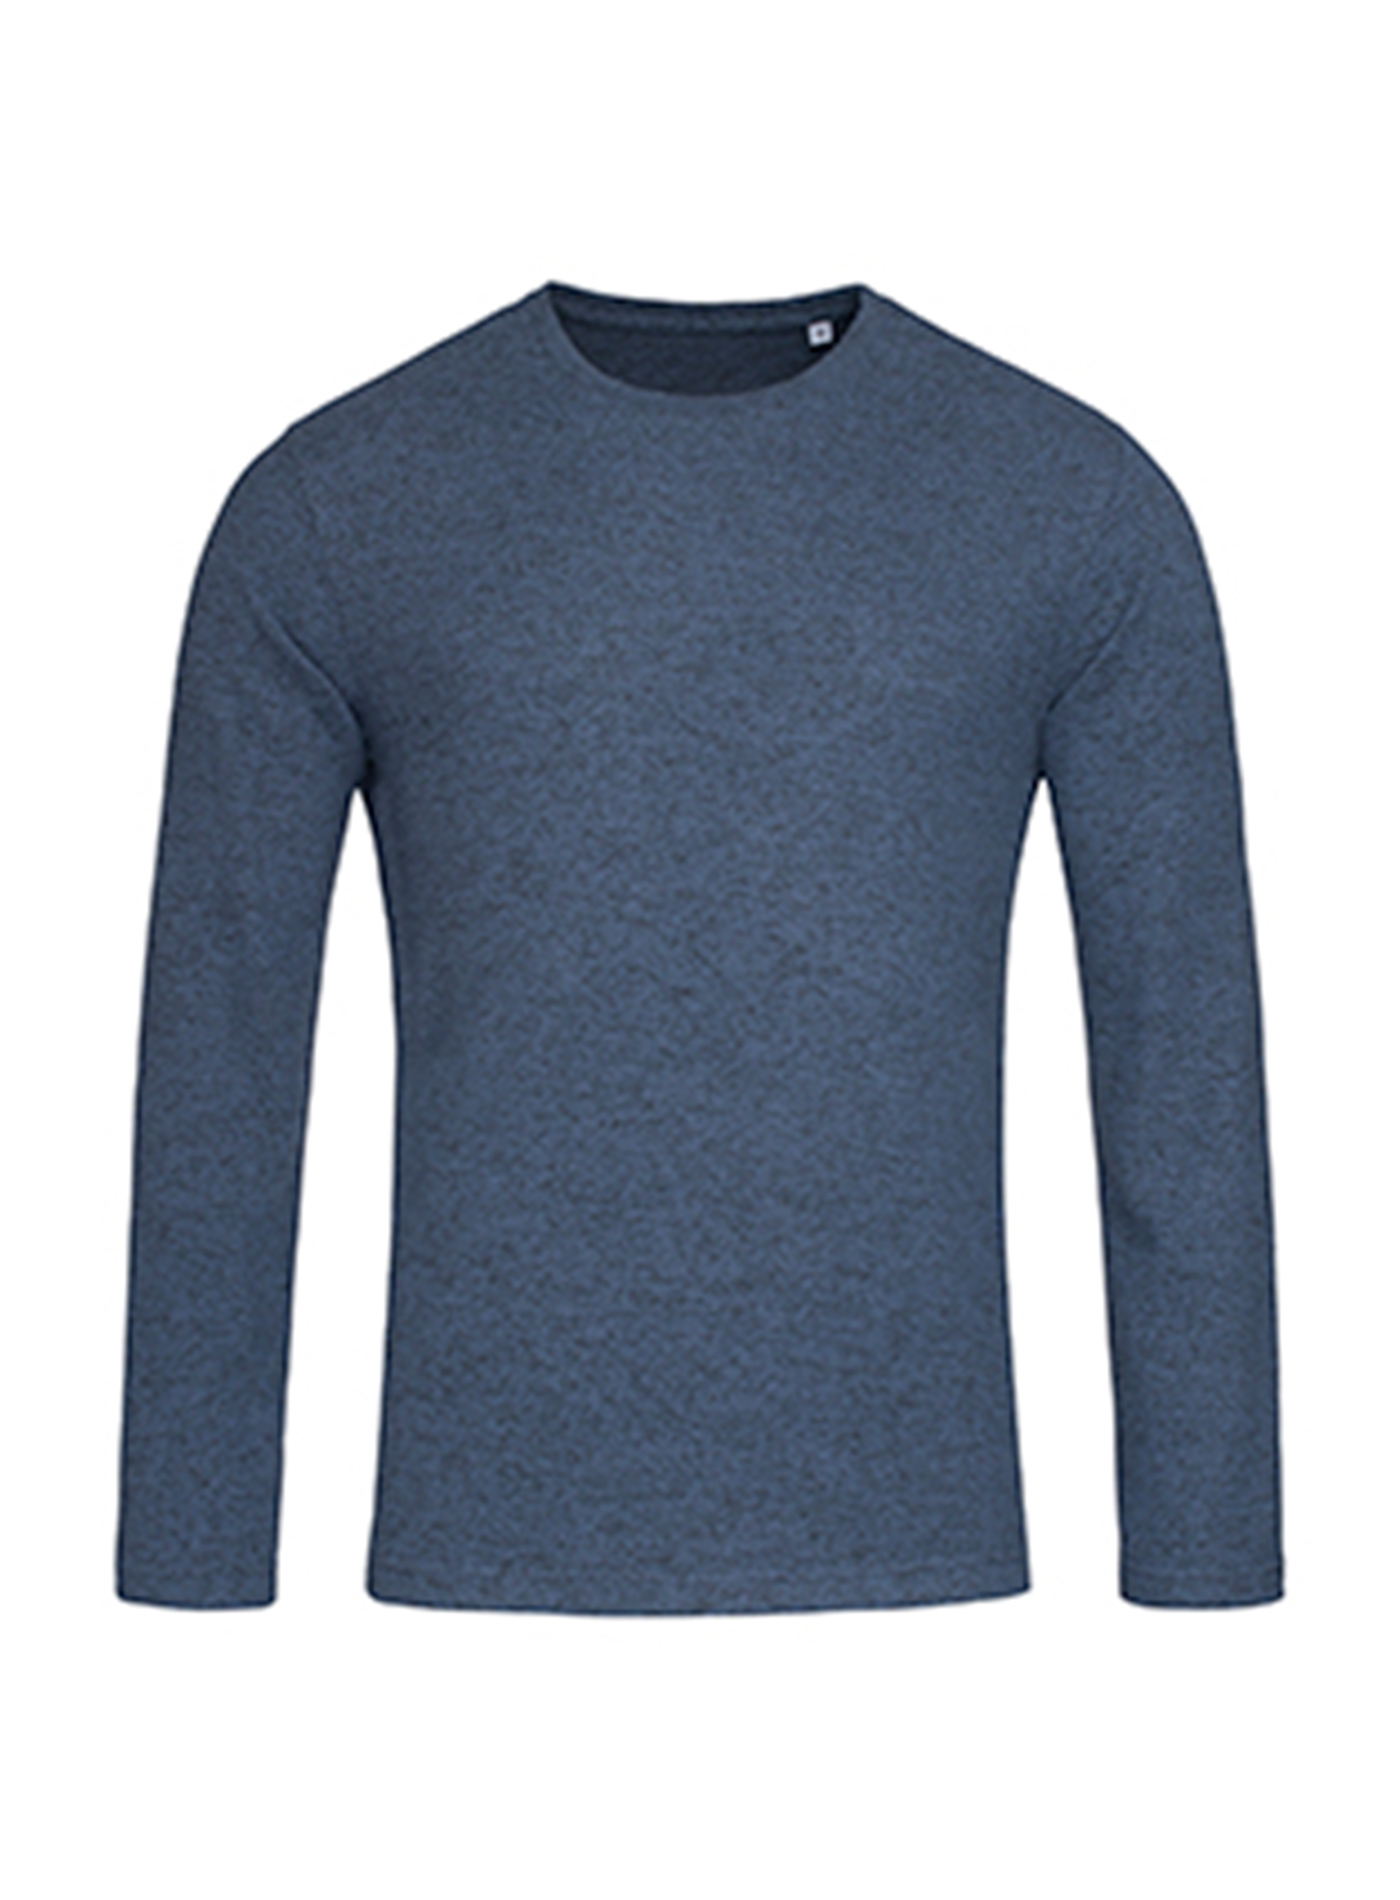 Pánský svetr Stedman knit - Modrá žíhaná XL